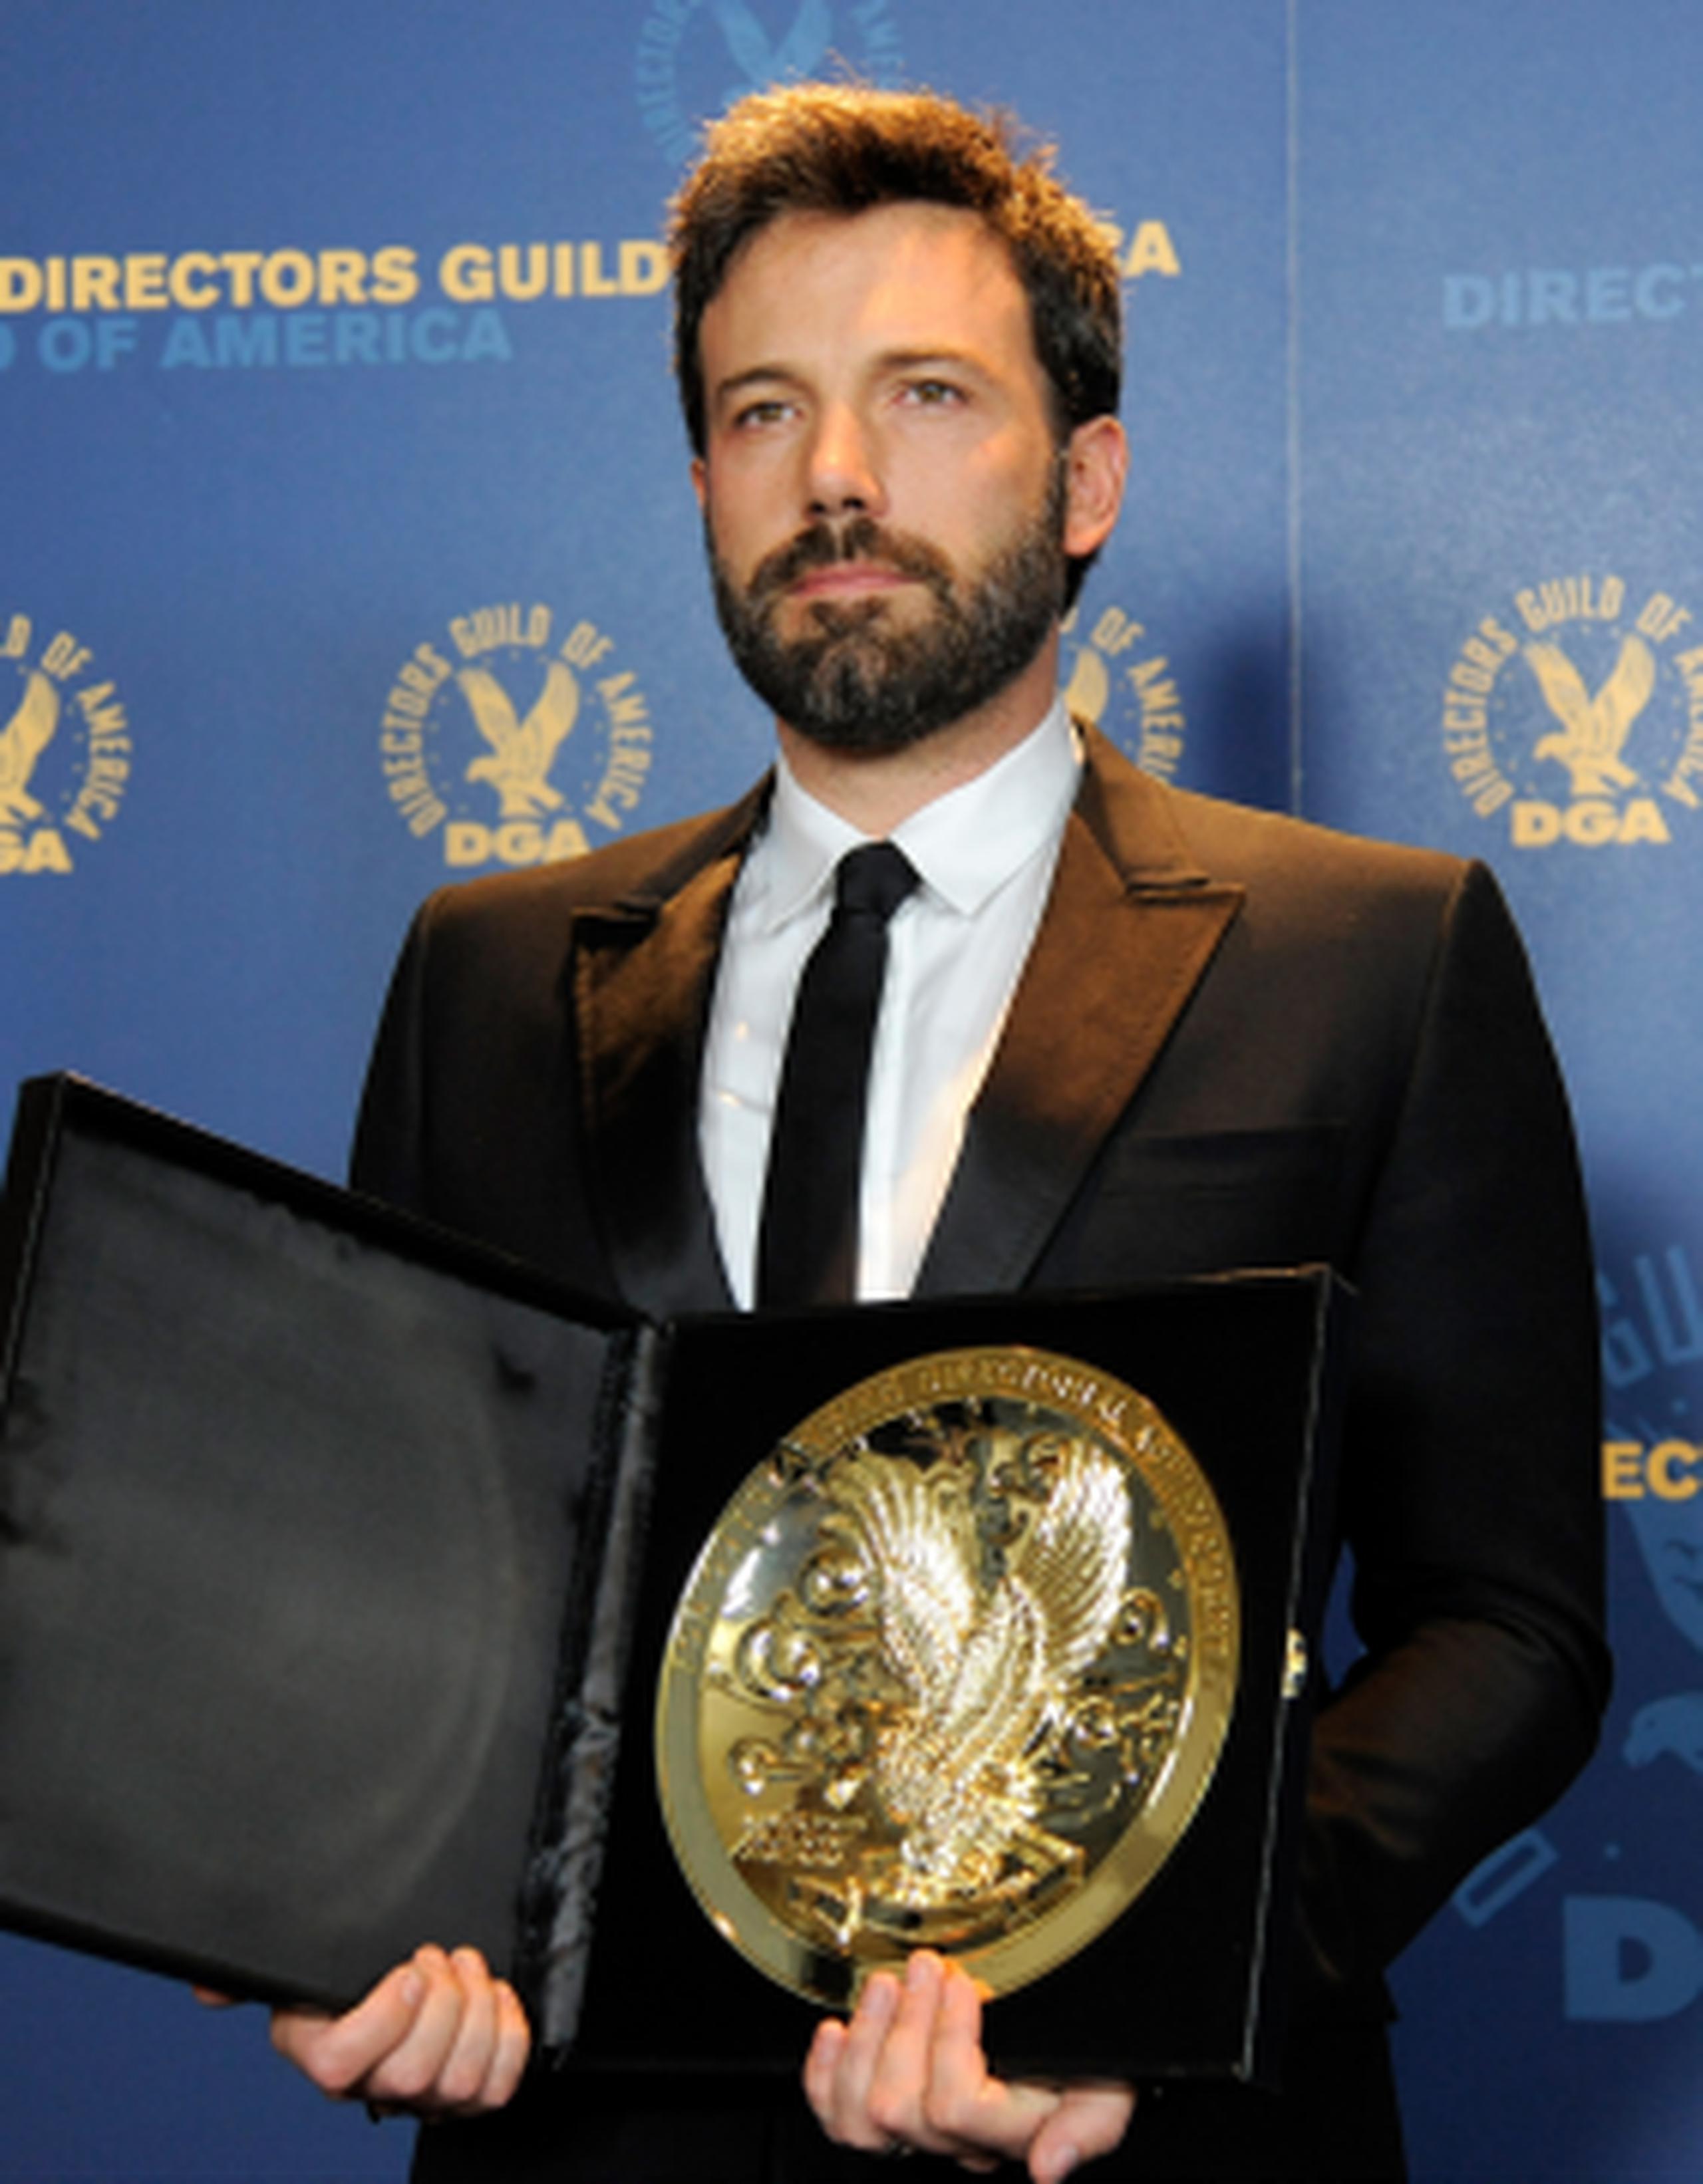 Ben Affleck recibió el sábado por la noche el máximo galardón del Directors Guild of America. (Chris Pizzello/Invision/AP)